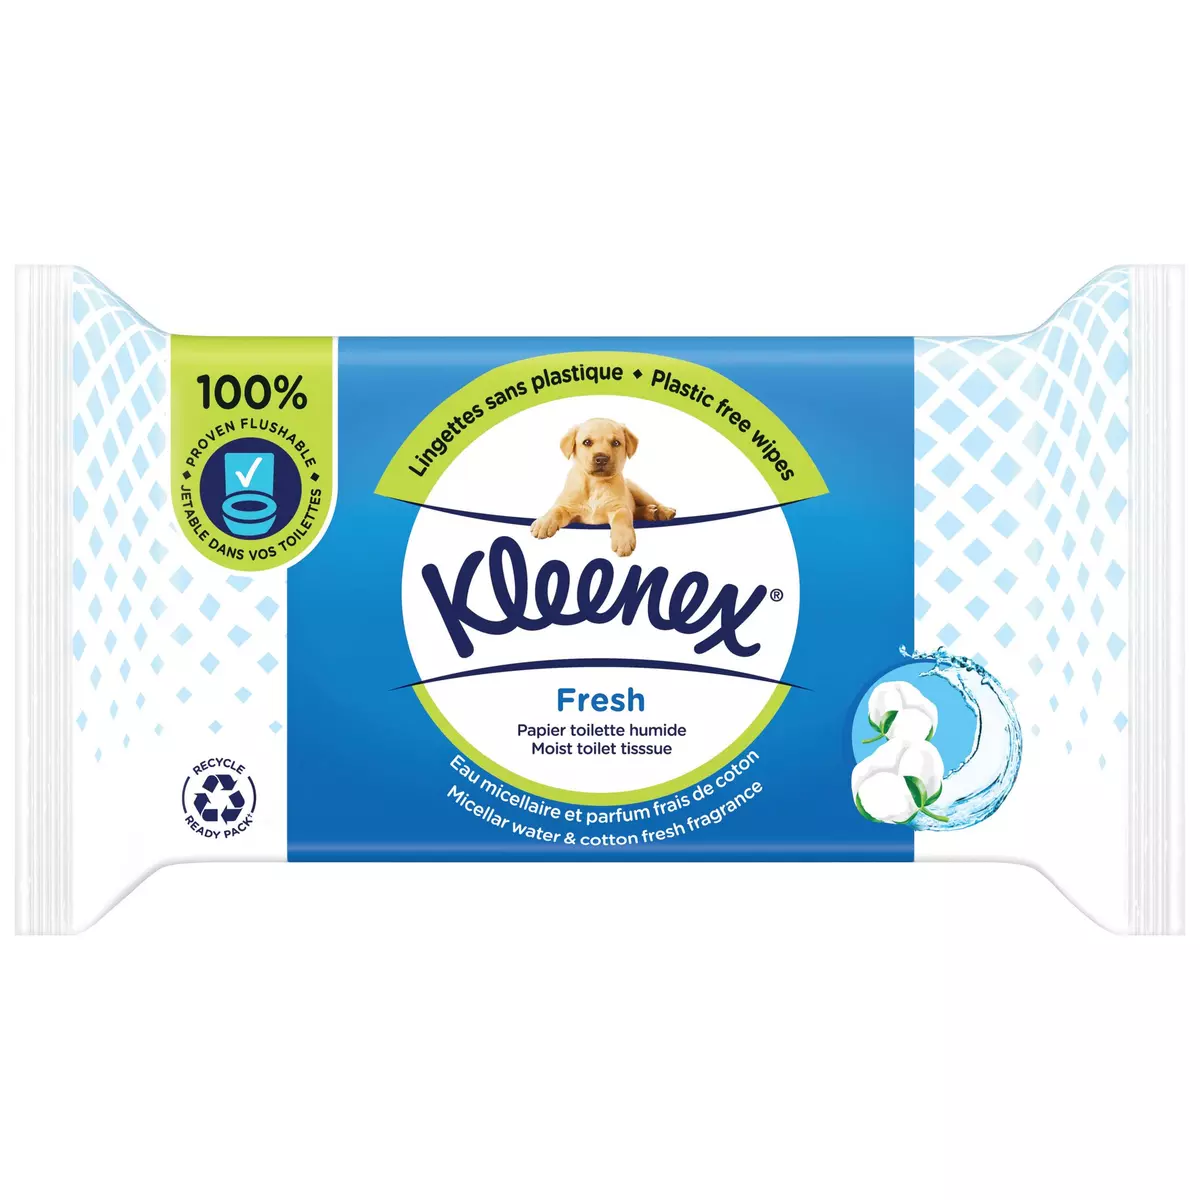 KLEENEX Lingettes papier toilette humide blanc fresh 42 lingettes